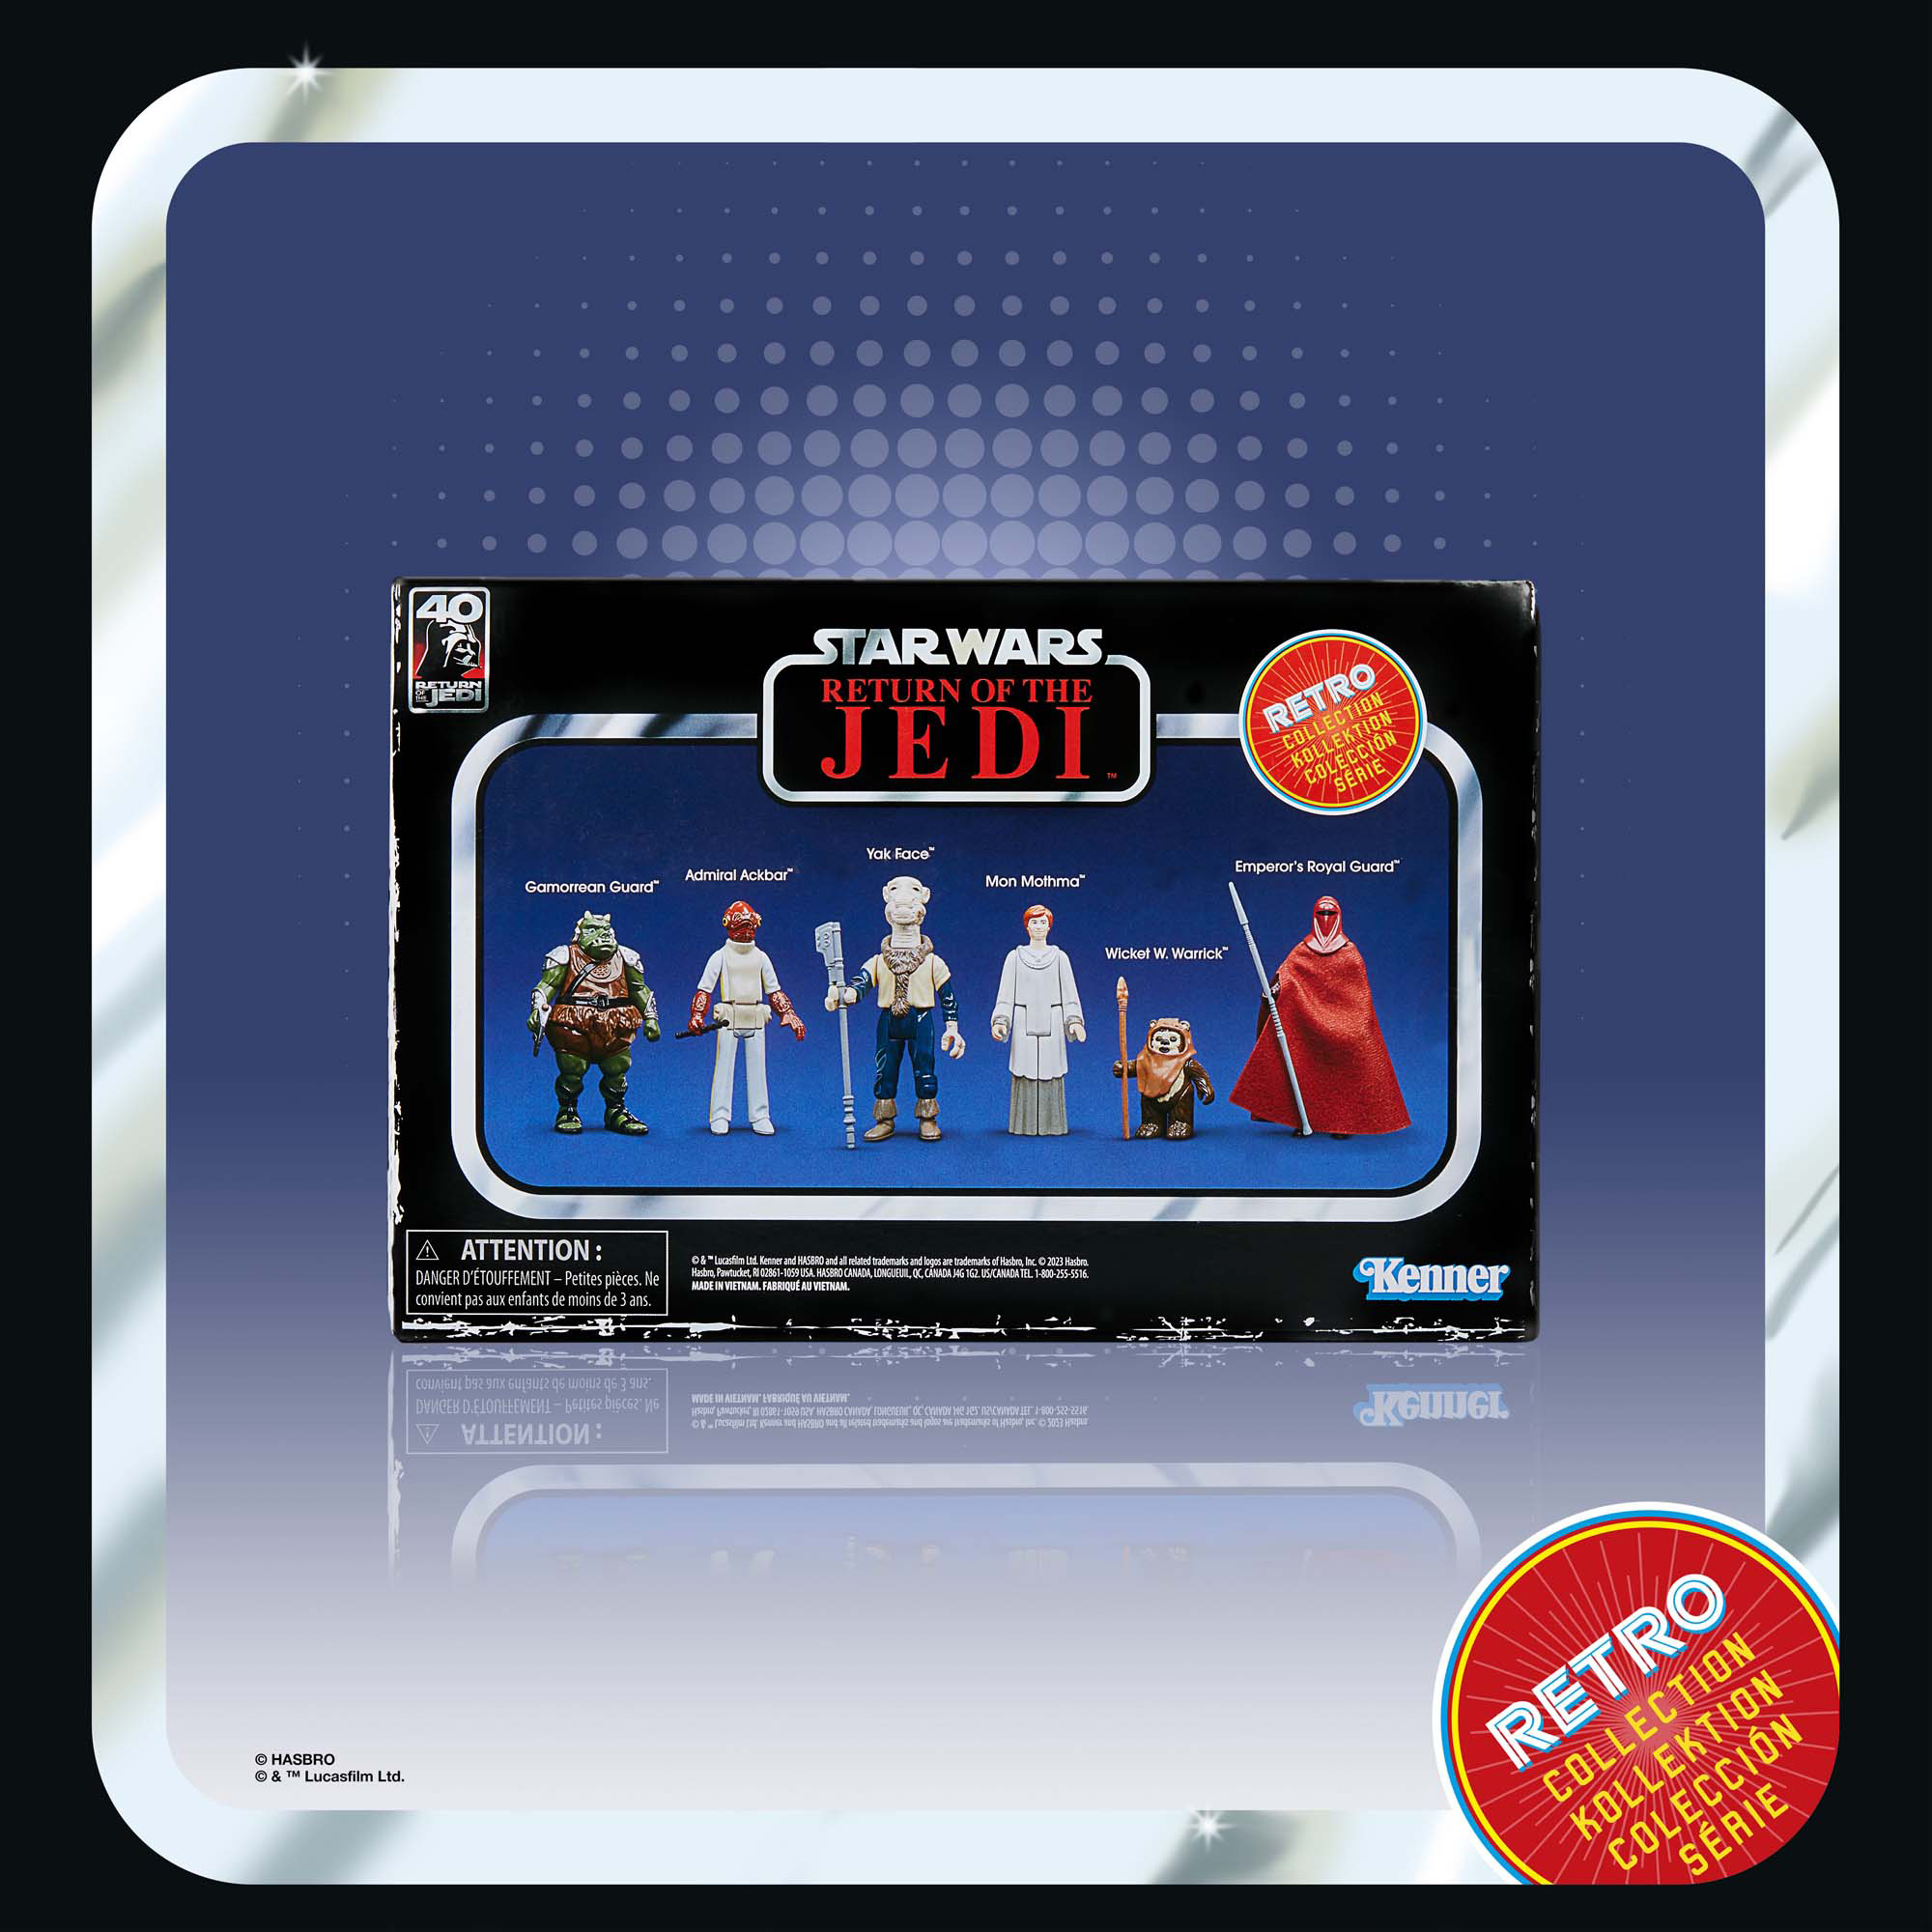 Press Release - New Retro Collection Return Of The Jedi Set